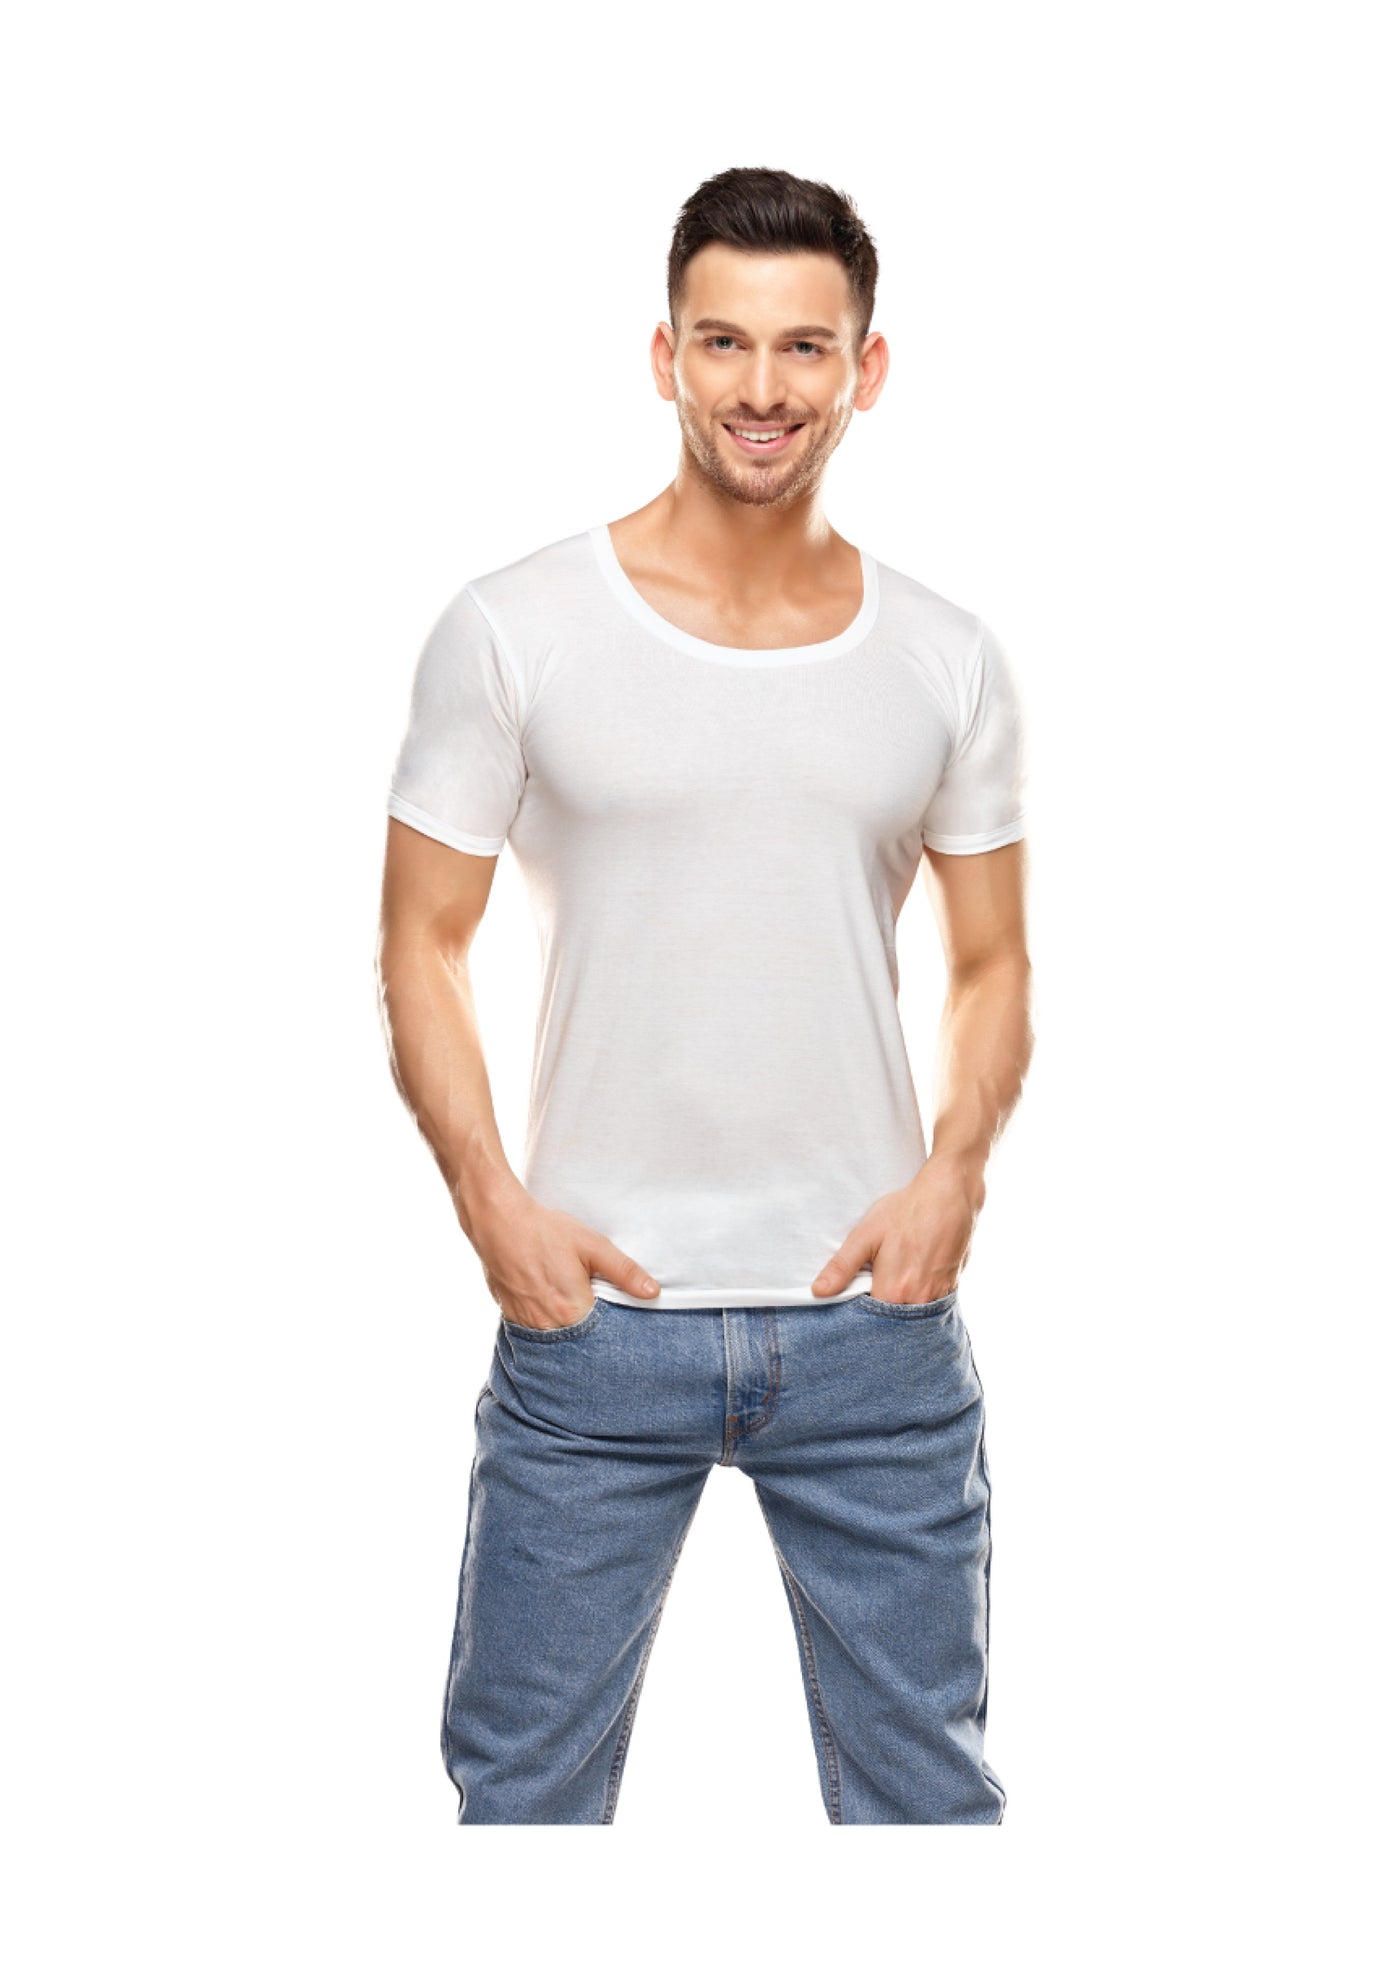 Innerwear for Mens - Casper White